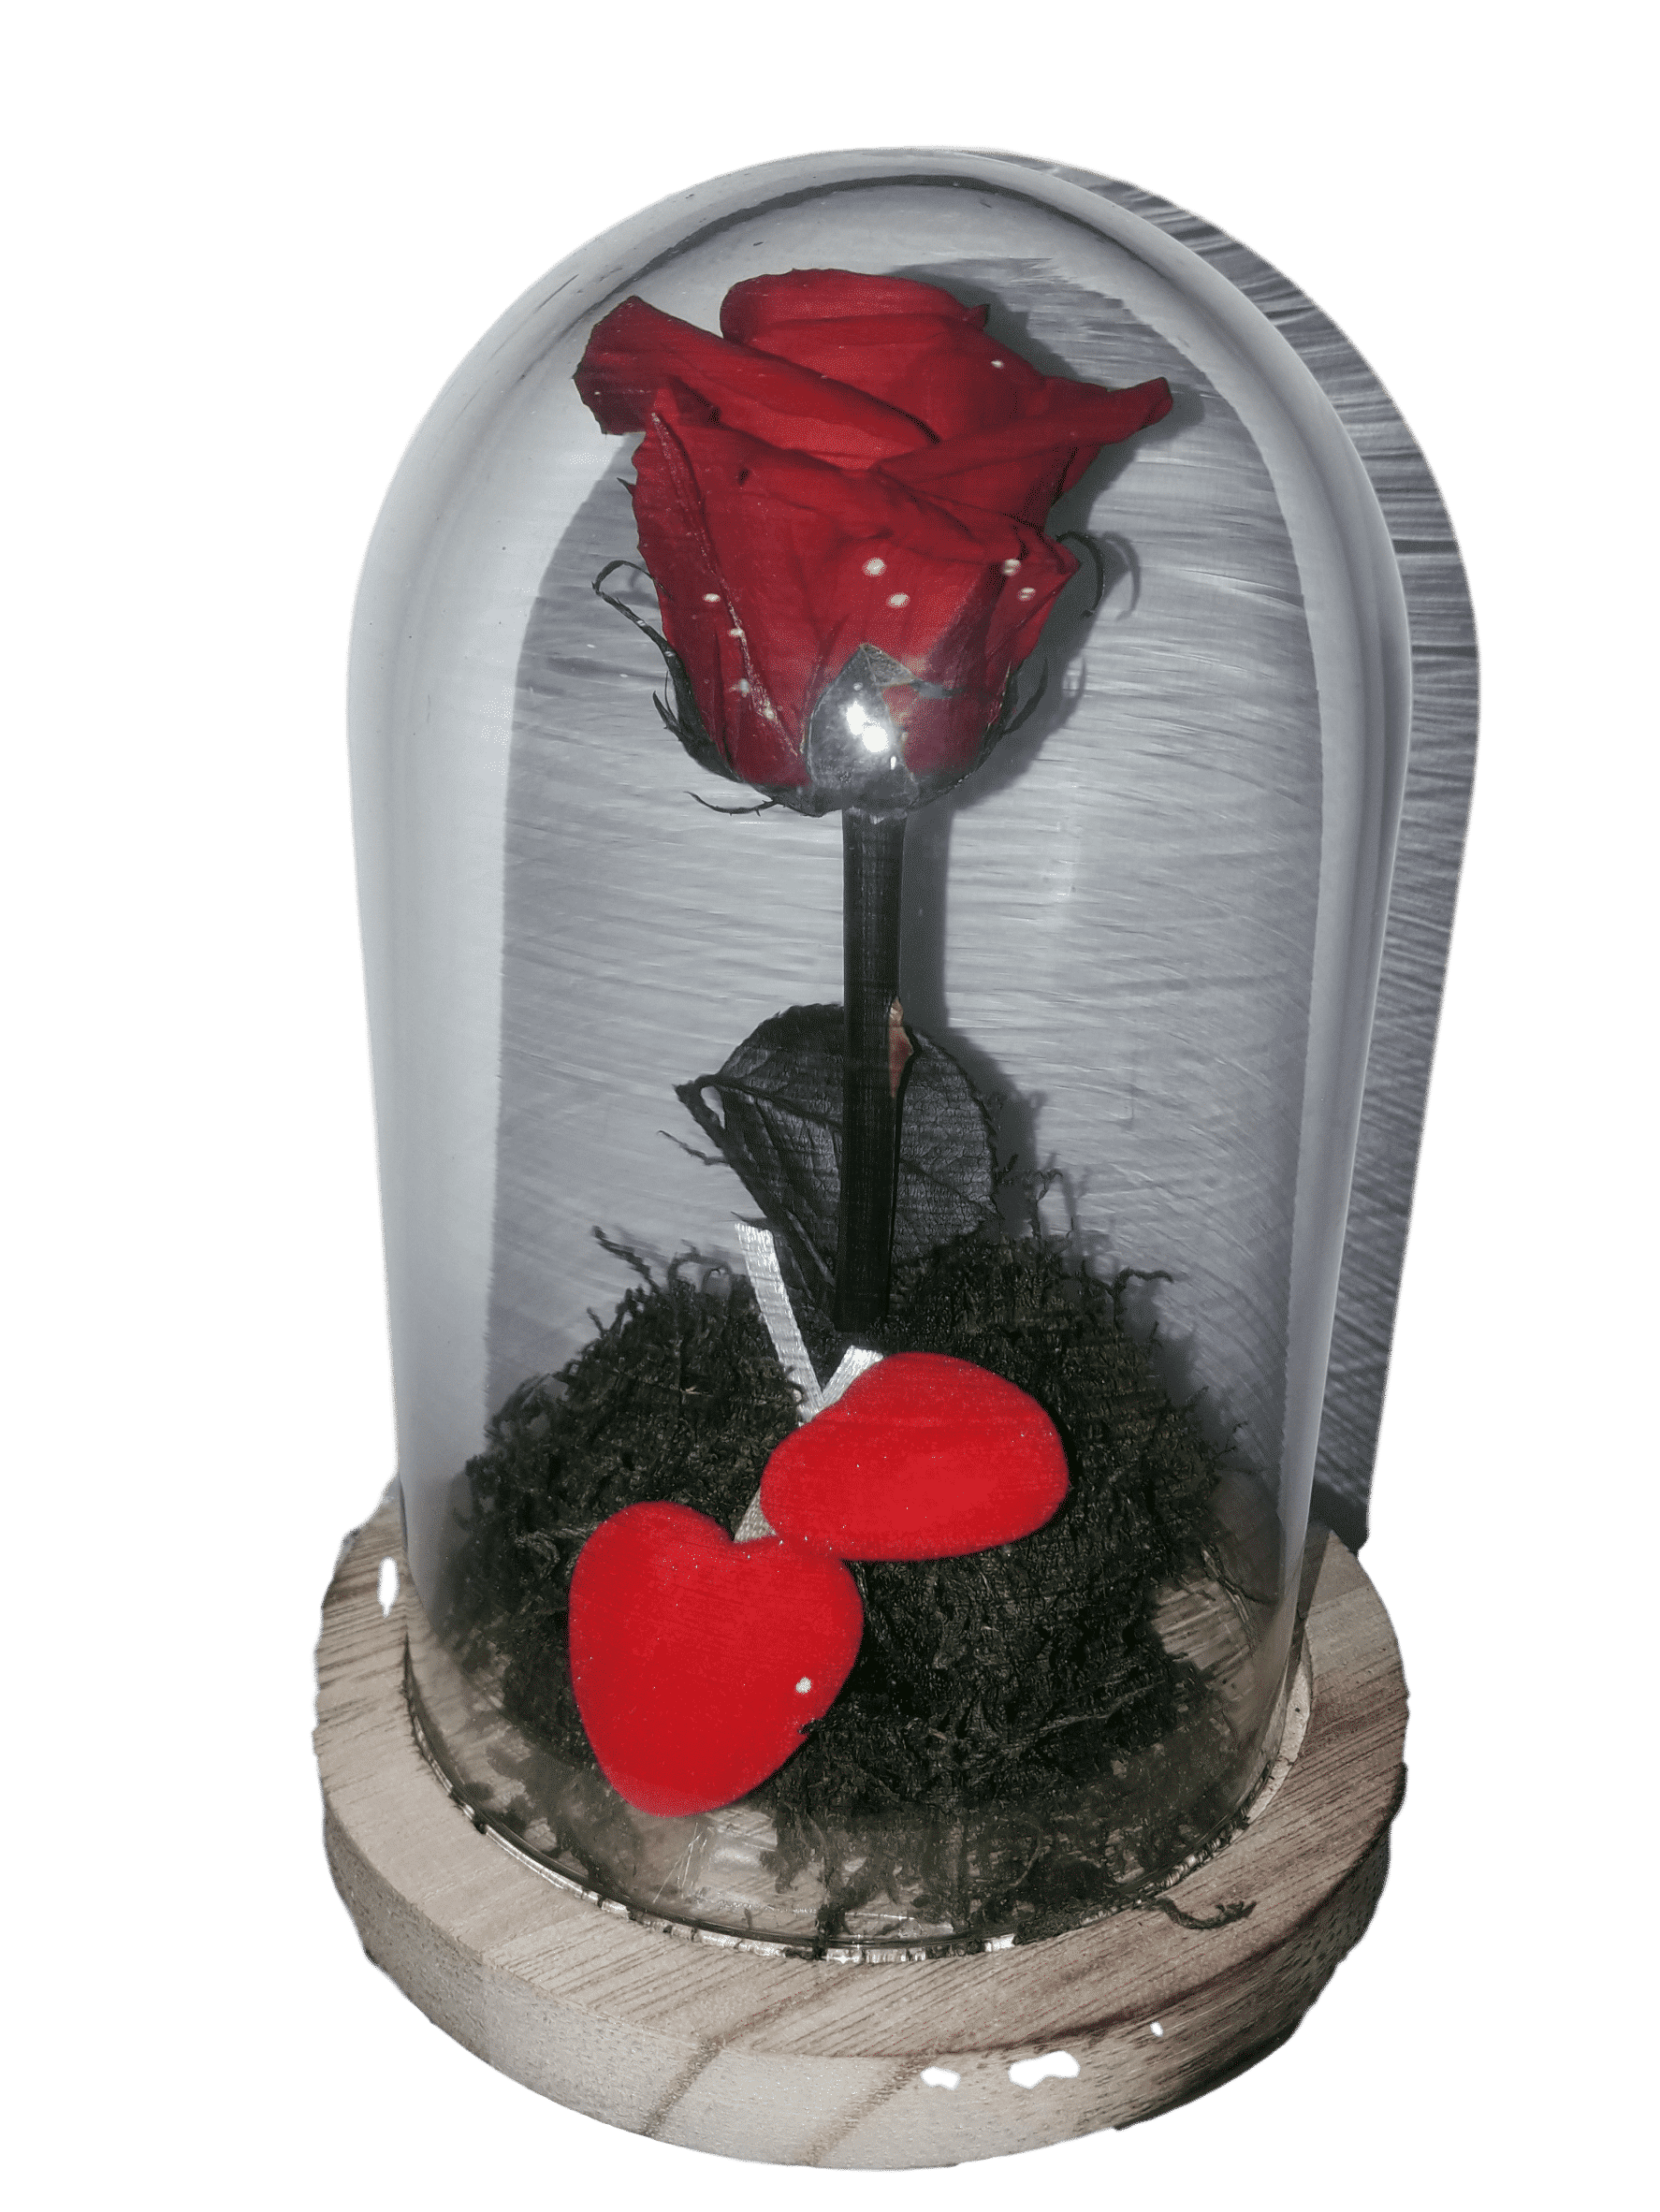 Acorazado Soviético Edredón Rosa eterna de la bella y la bestia - Envíos de flores Graficflower